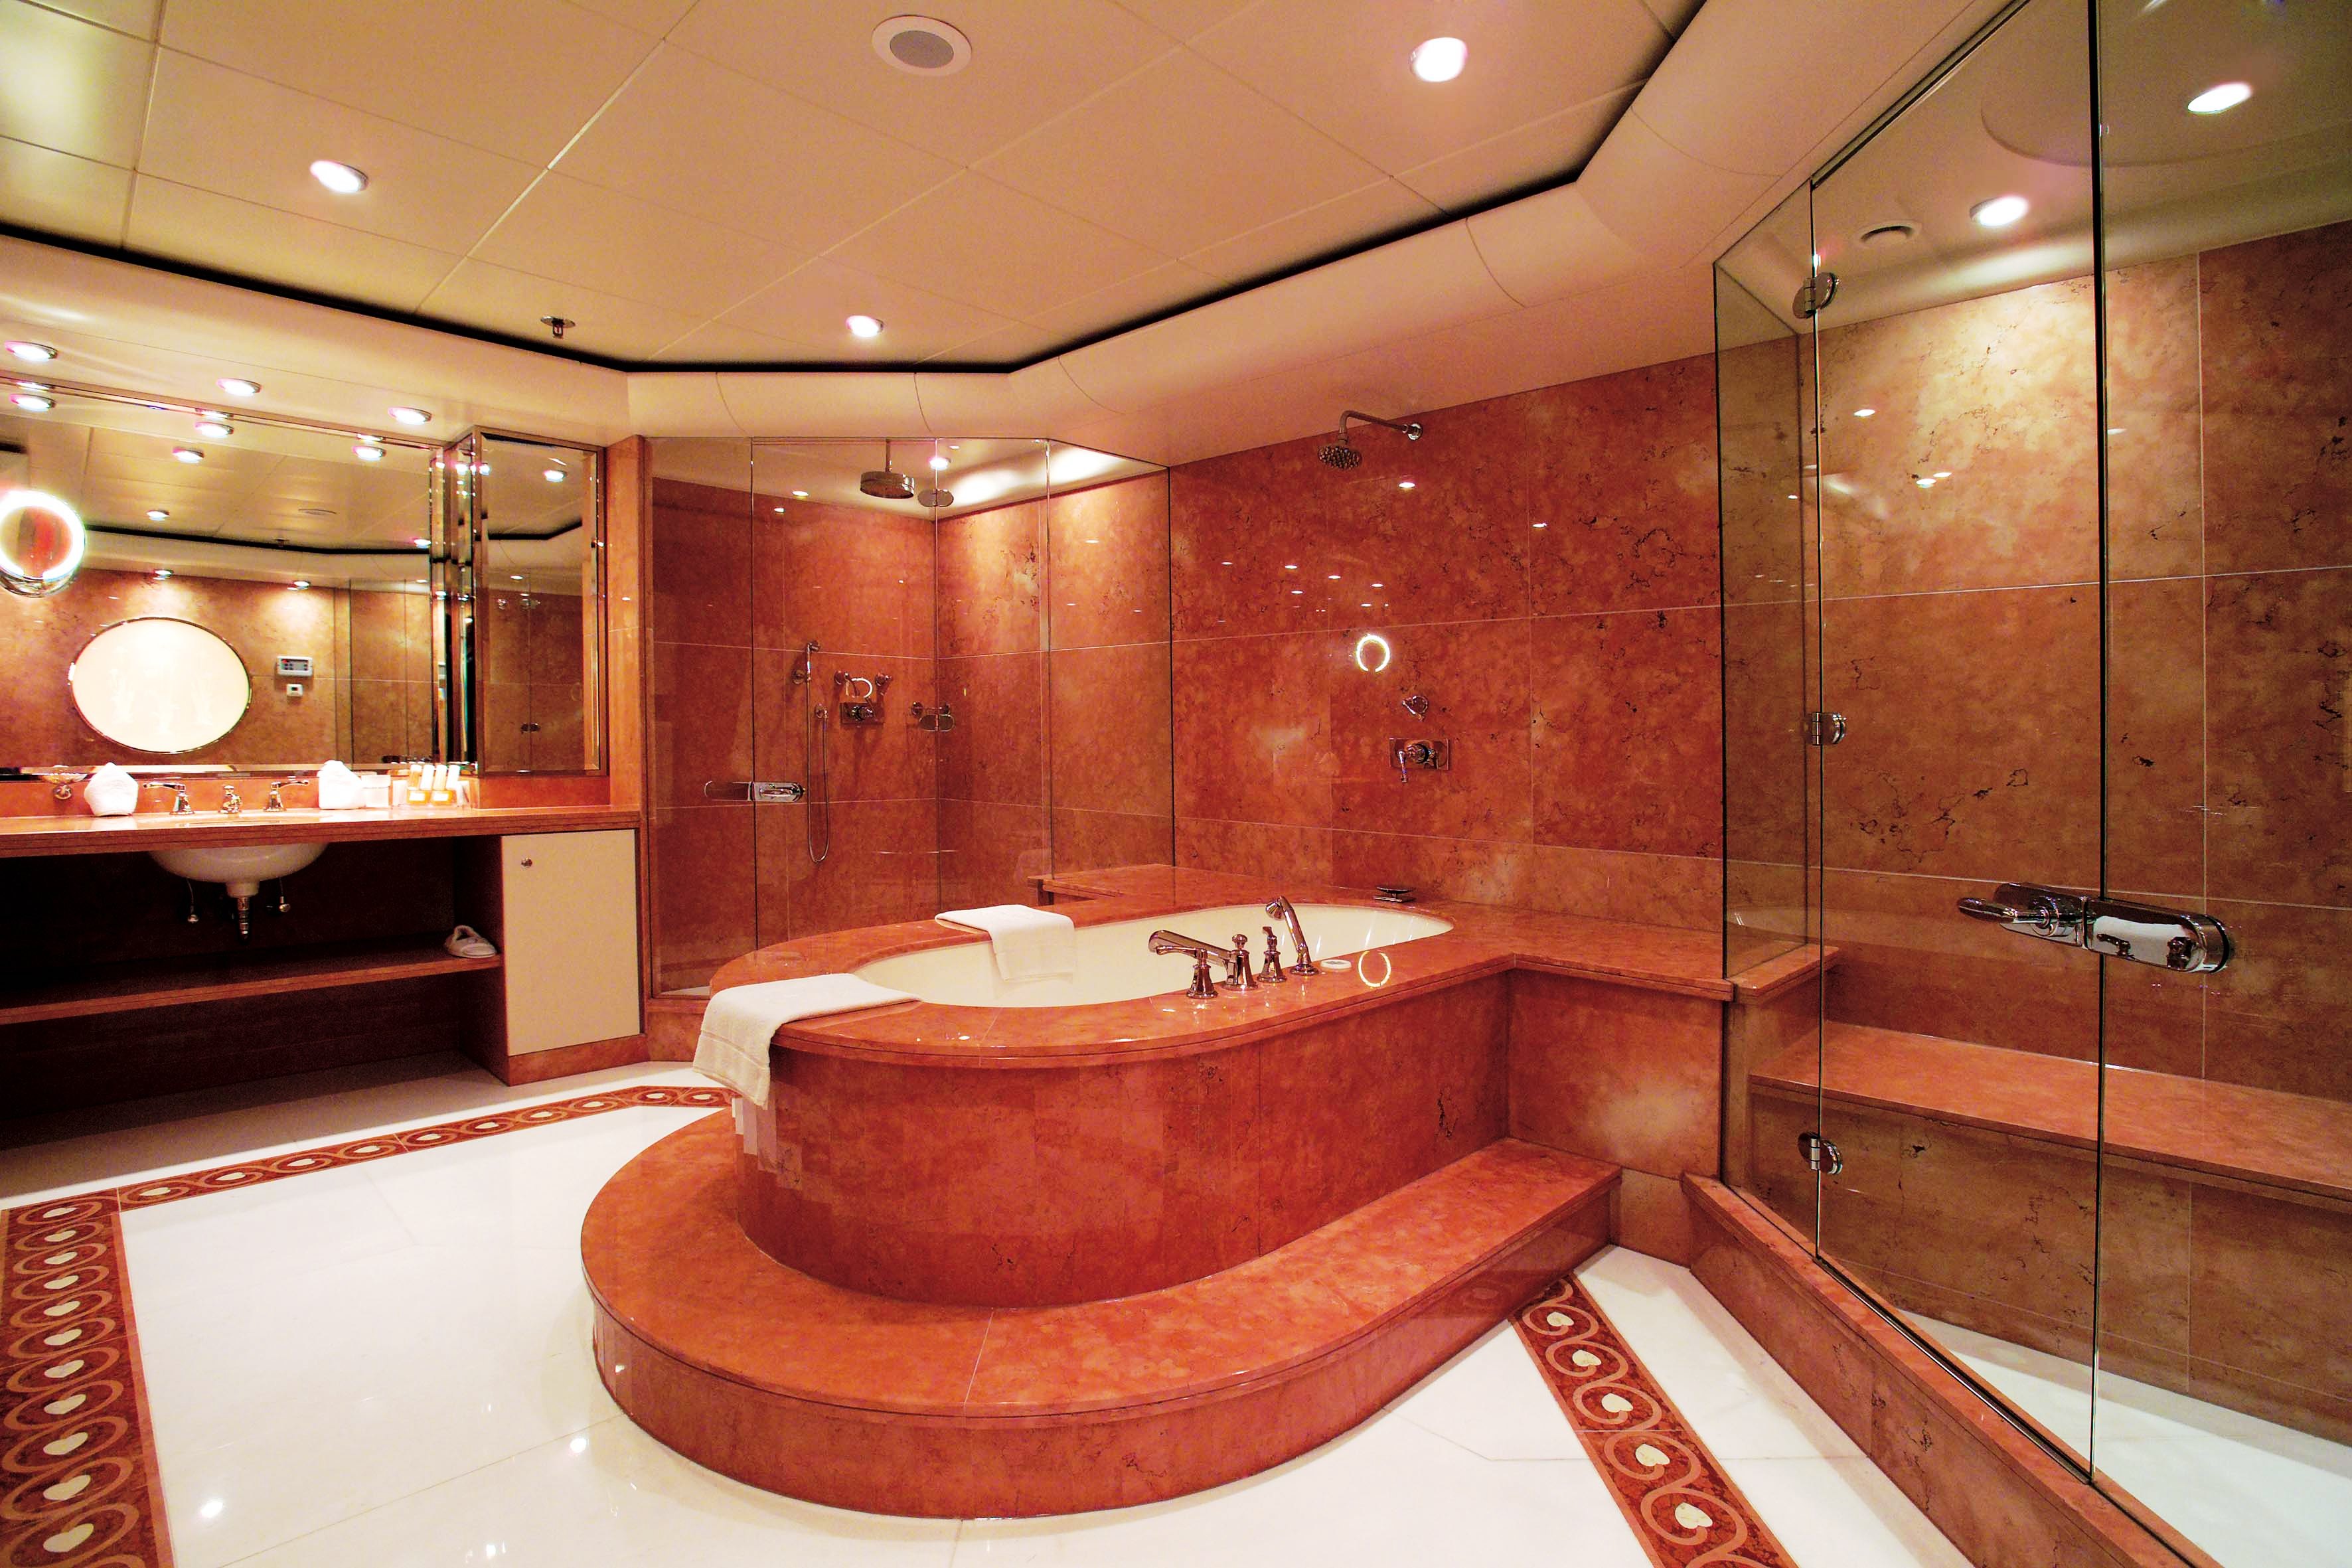 Luxury Master Bathrooms | 3543 x 2362 · 935 kB · jpeg